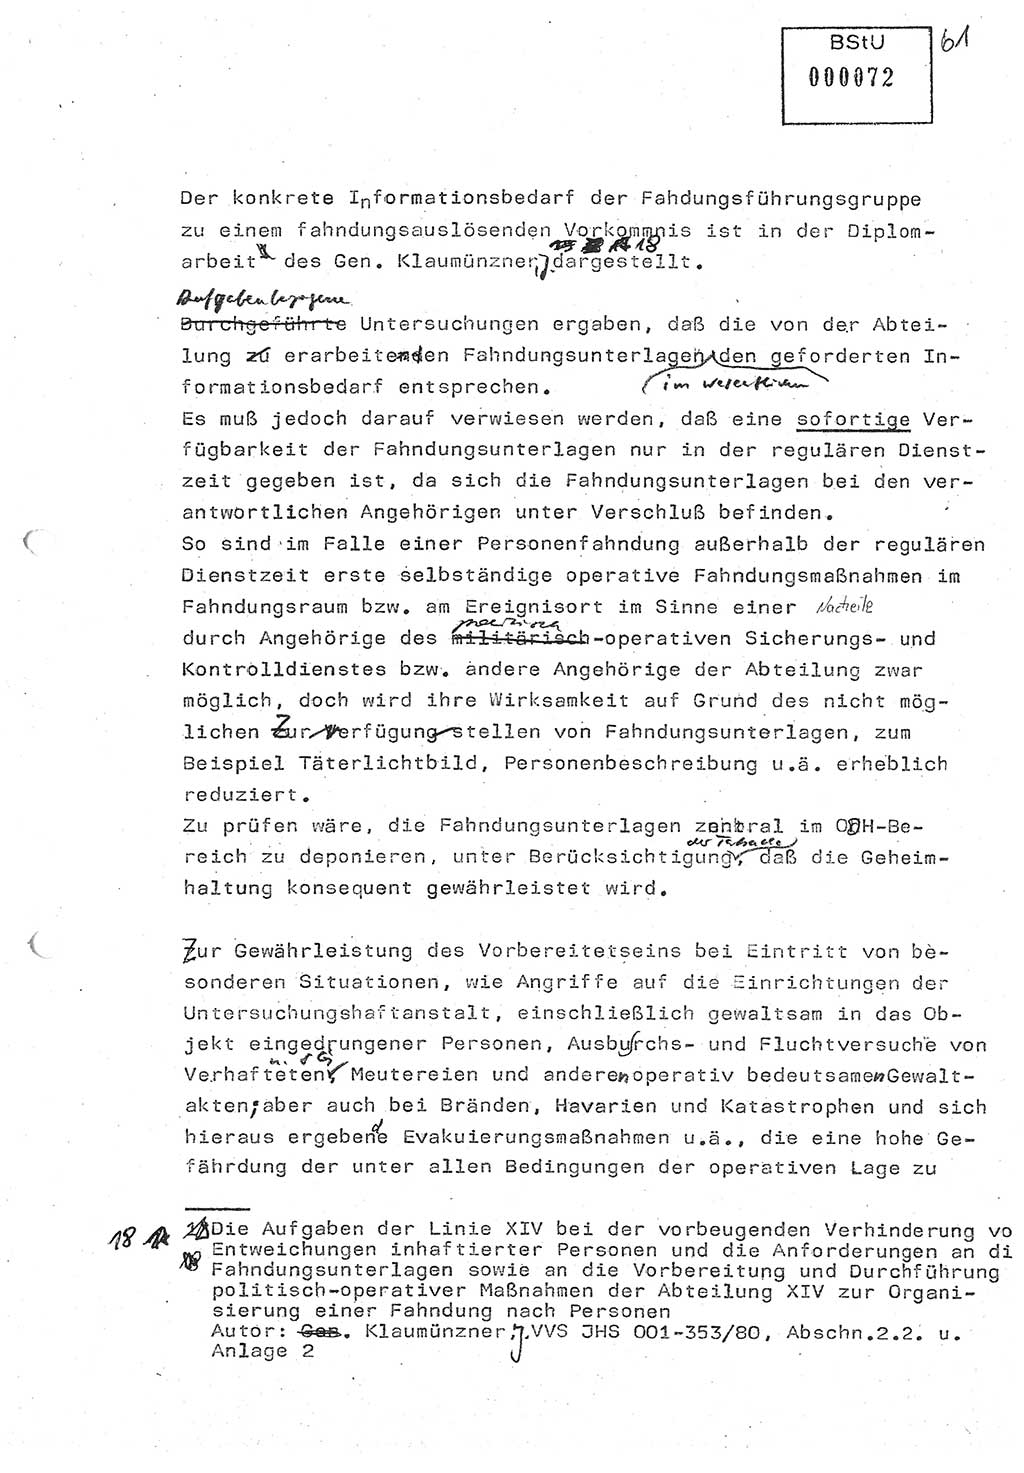 Diplomarbeit (Entwurf) Oberleutnant Peter Parke (Abt. ⅩⅣ), Ministerium für Staatssicherheit (MfS) [Deutsche Demokratische Republik (DDR)], Juristische Hochschule (JHS), Geheime Verschlußsache (GVS) o001-98/86, Potsdam 1986, Seite 72 (Dipl.-Arb. MfS DDR JHS GVS o001-98/86 1986, S. 72)